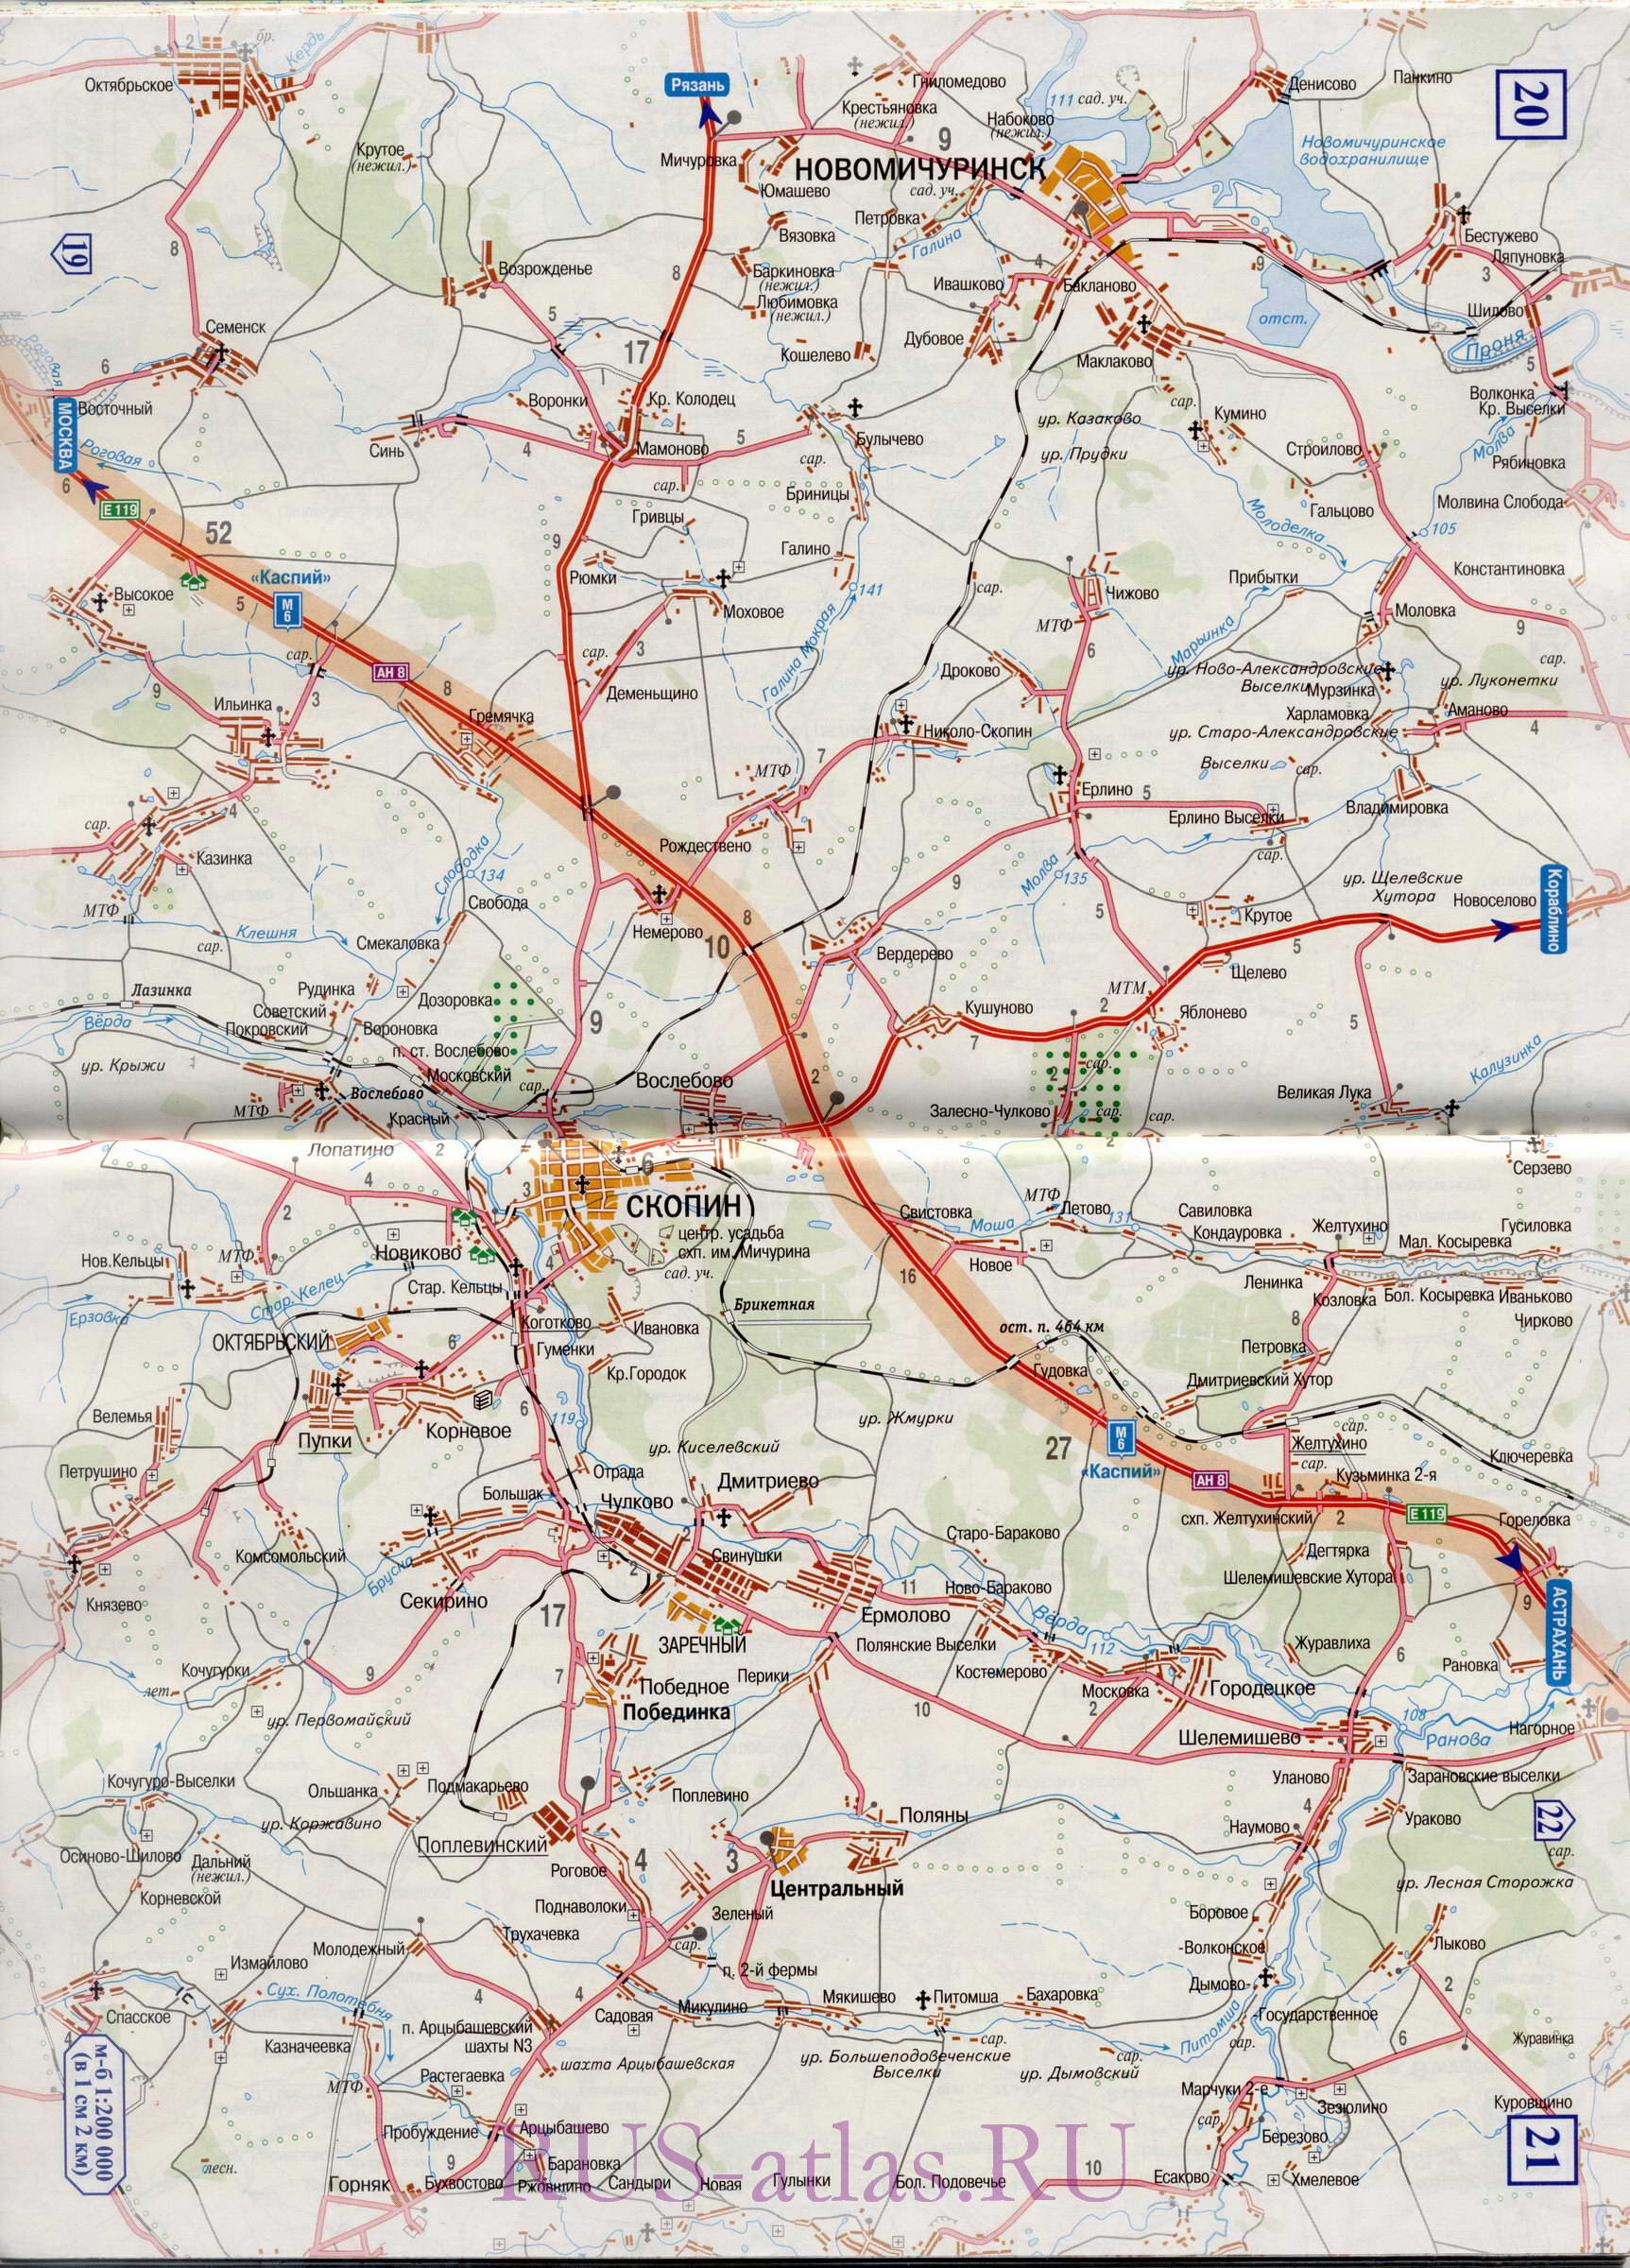 Карта дороги Михайлов-Тамбов. Подробная крупномасштабная карта автомобильной трассы М6 на участке от Михайлова до Тамбова, B0 - 